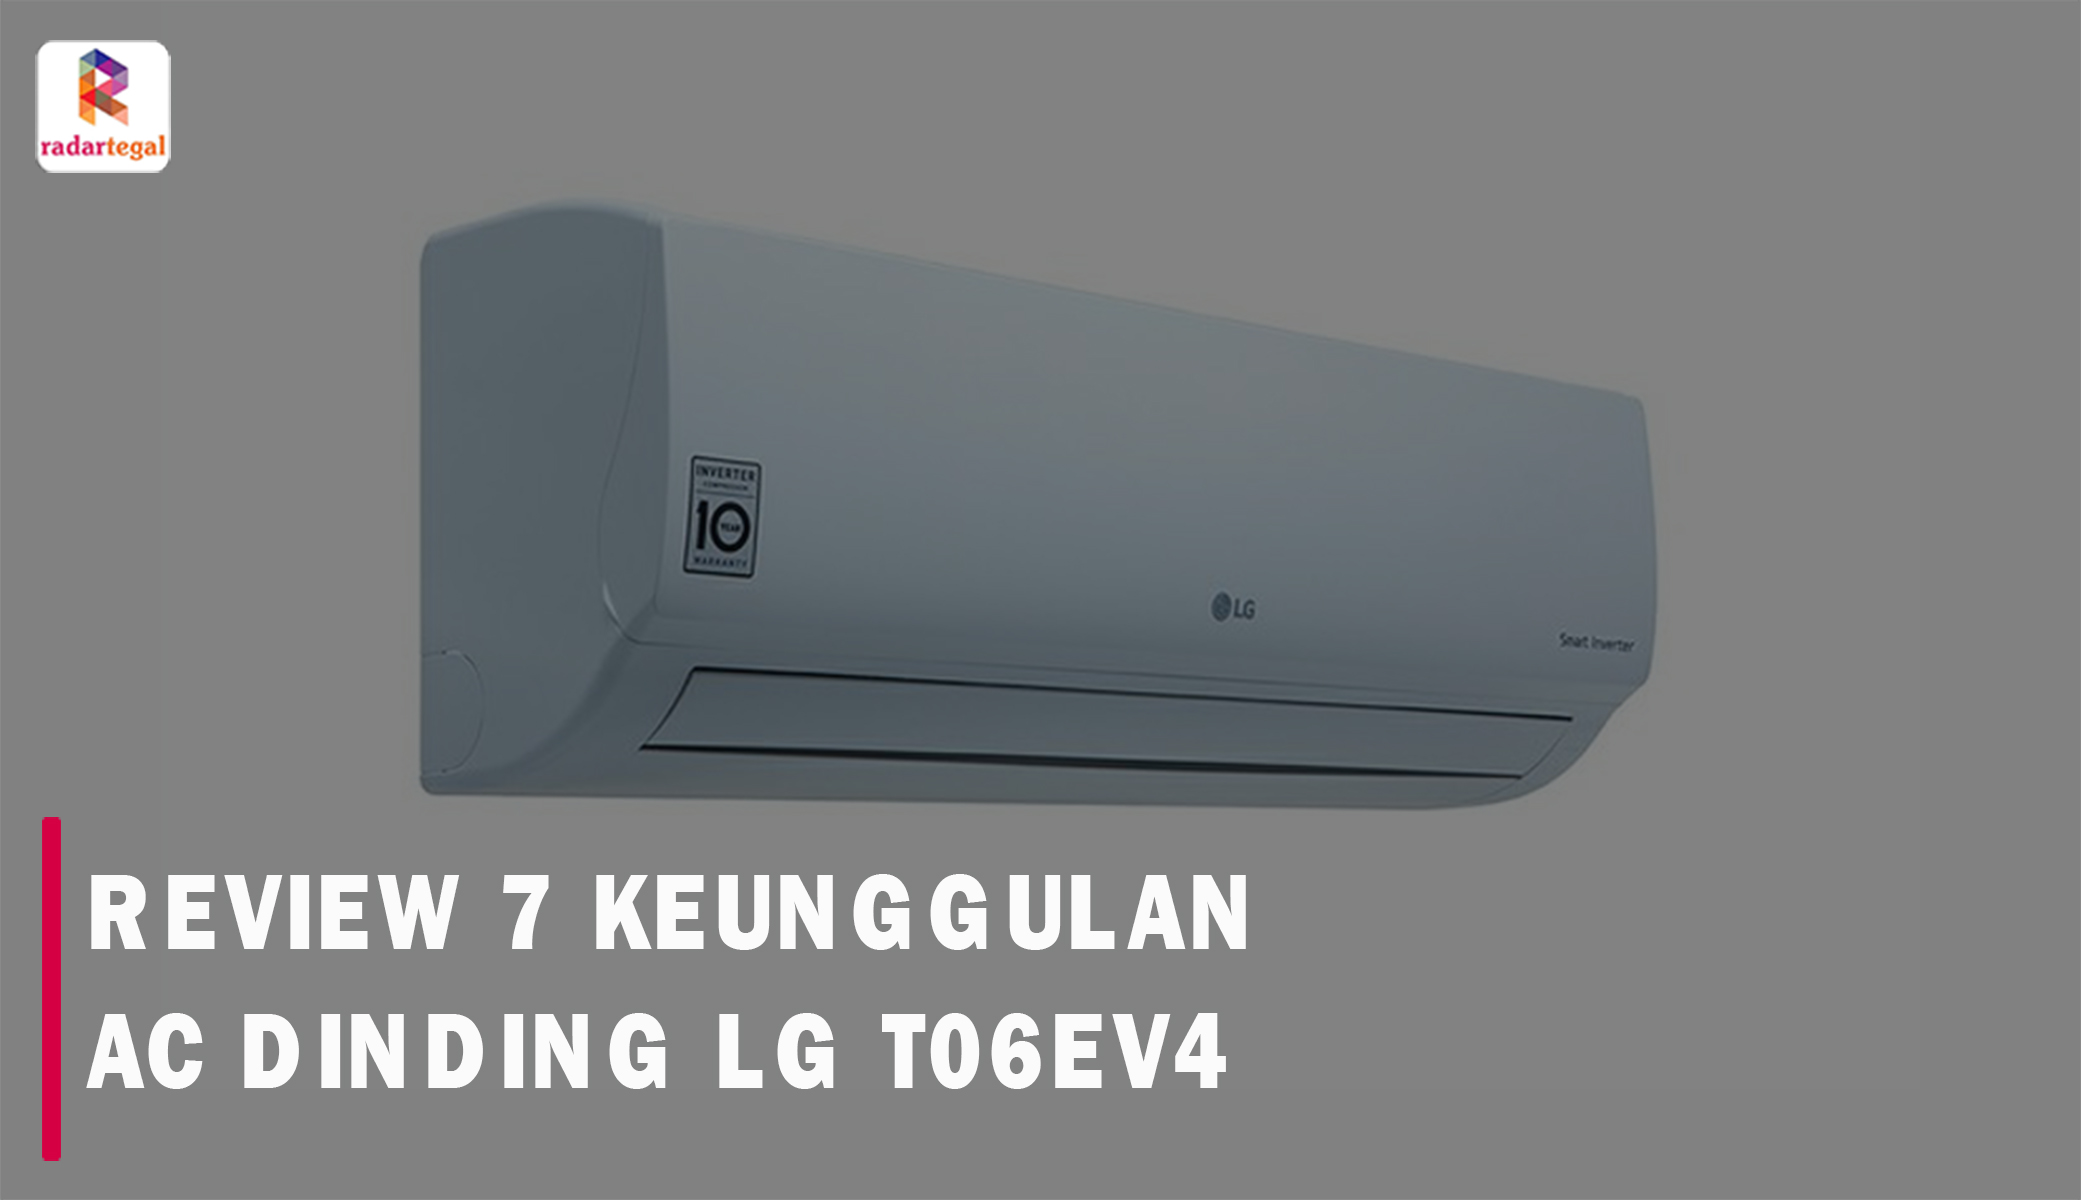 Review AC Dinding LG T06EV4, Punya 7 Keunggulan Plus Peforma Pendingan Maksimal, Udara Bersih dan Sejuk 